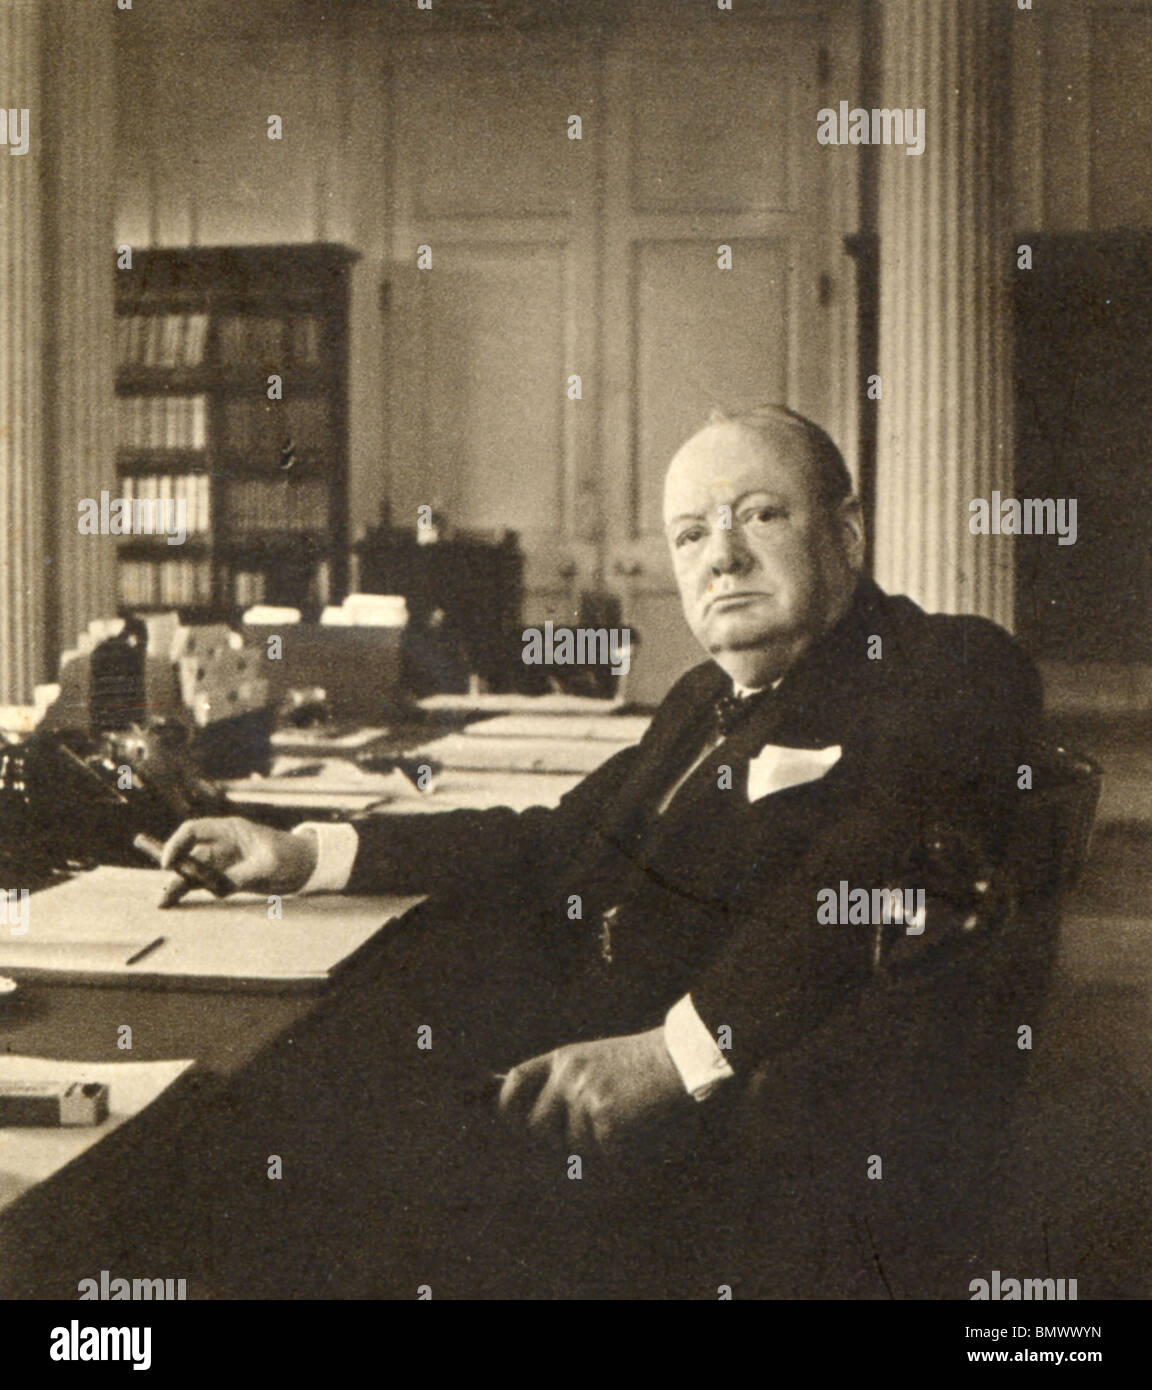 Mr Winston Churchill in his broadcast to the Empire Stock Photo